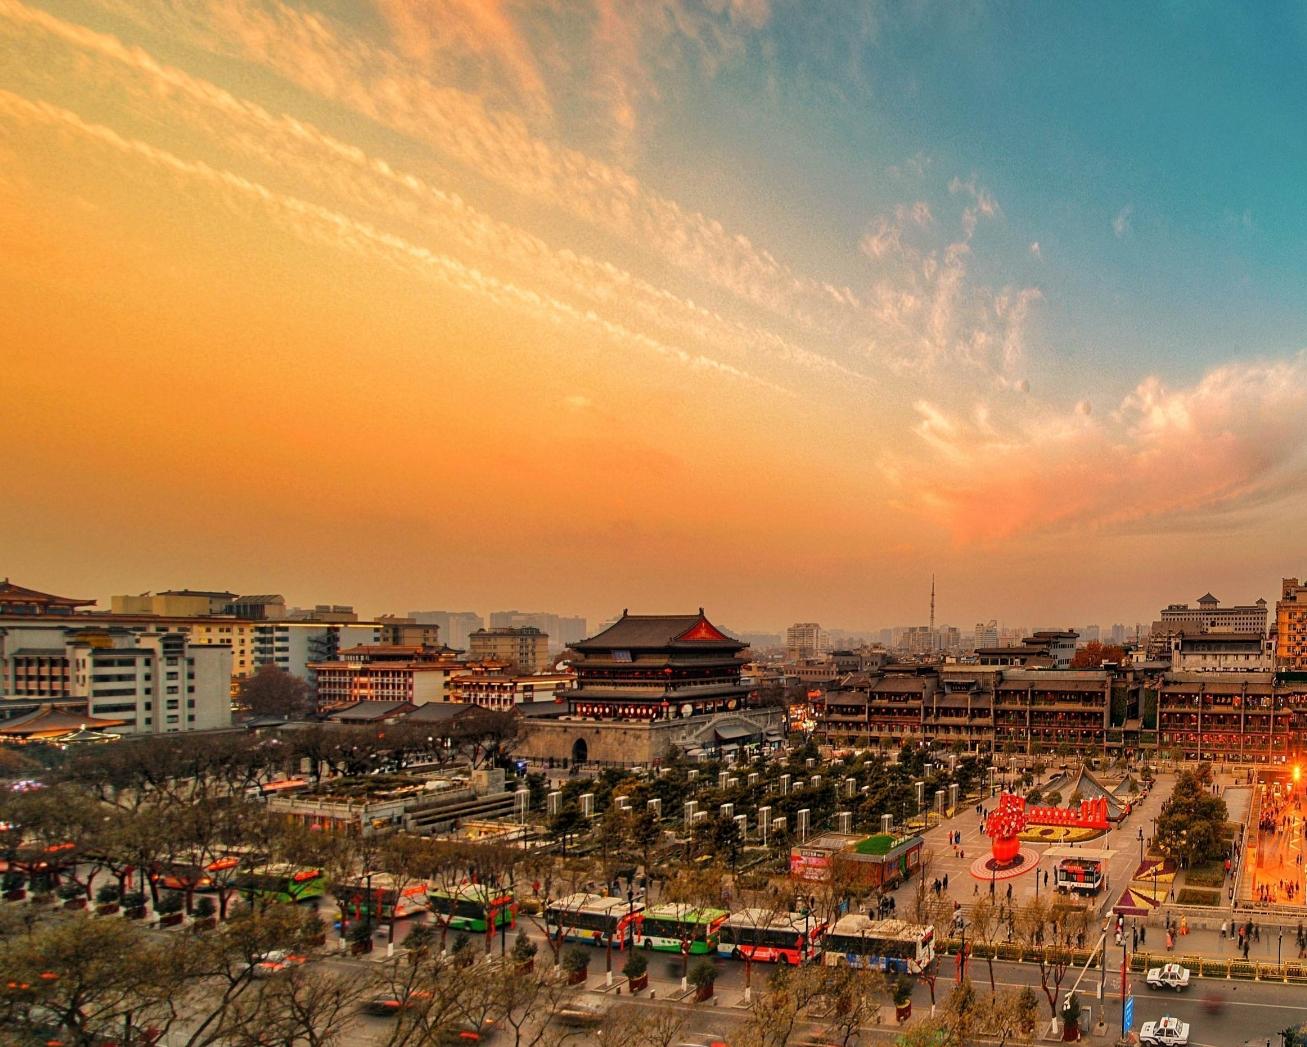 【携程攻略】西安西安钟楼景点,钟楼和鼓楼，可以称为长安的地标性建筑，西安的街道同北京一样，皇城…